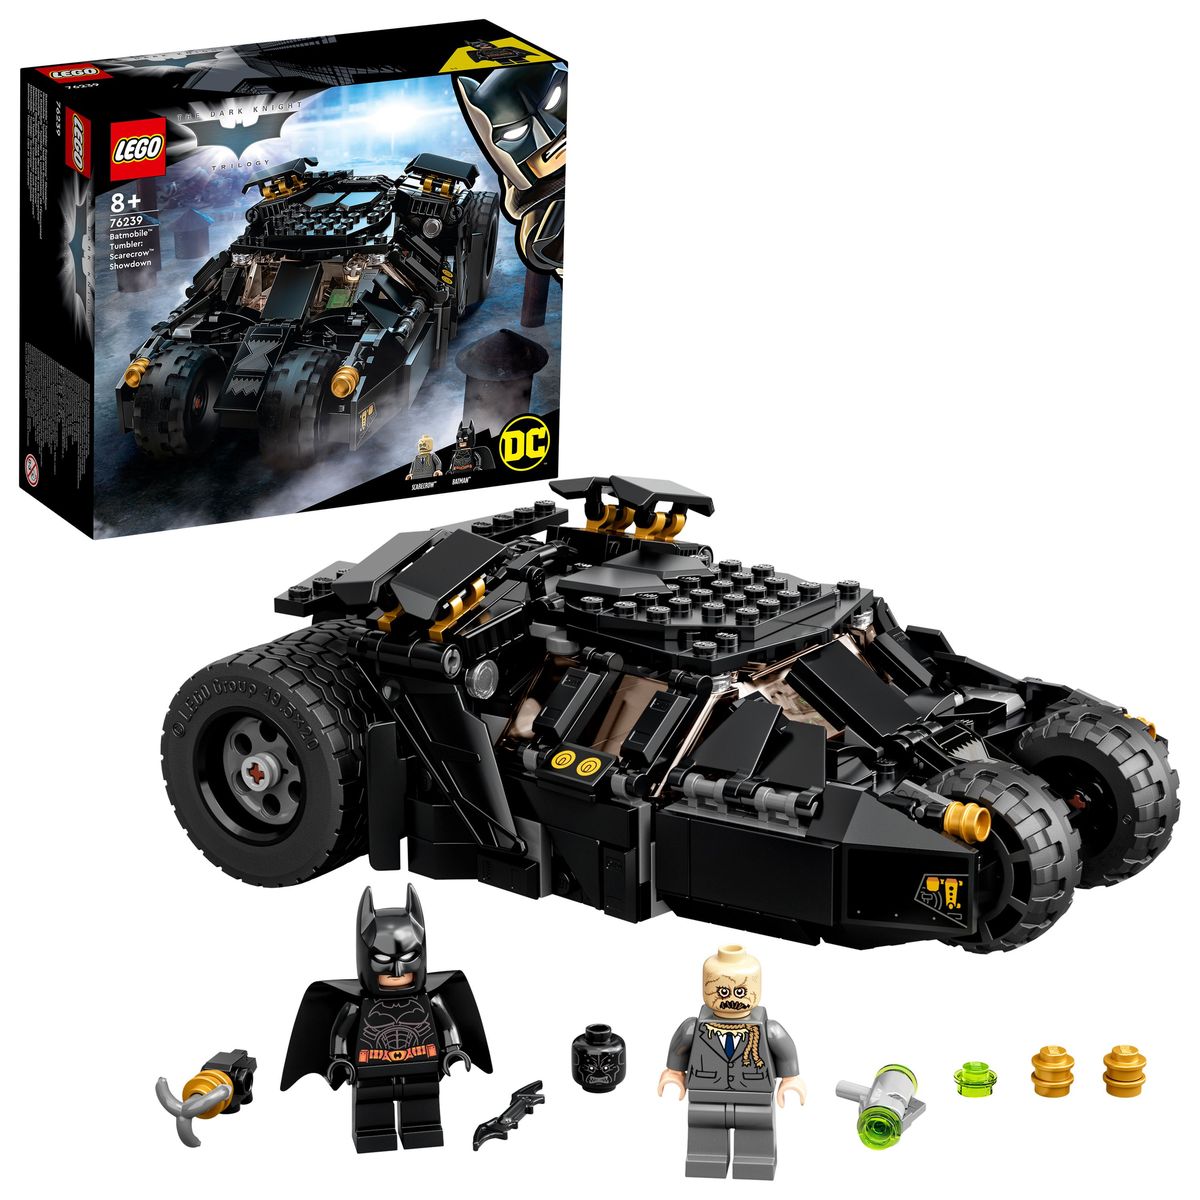 LEGO Batman Sets